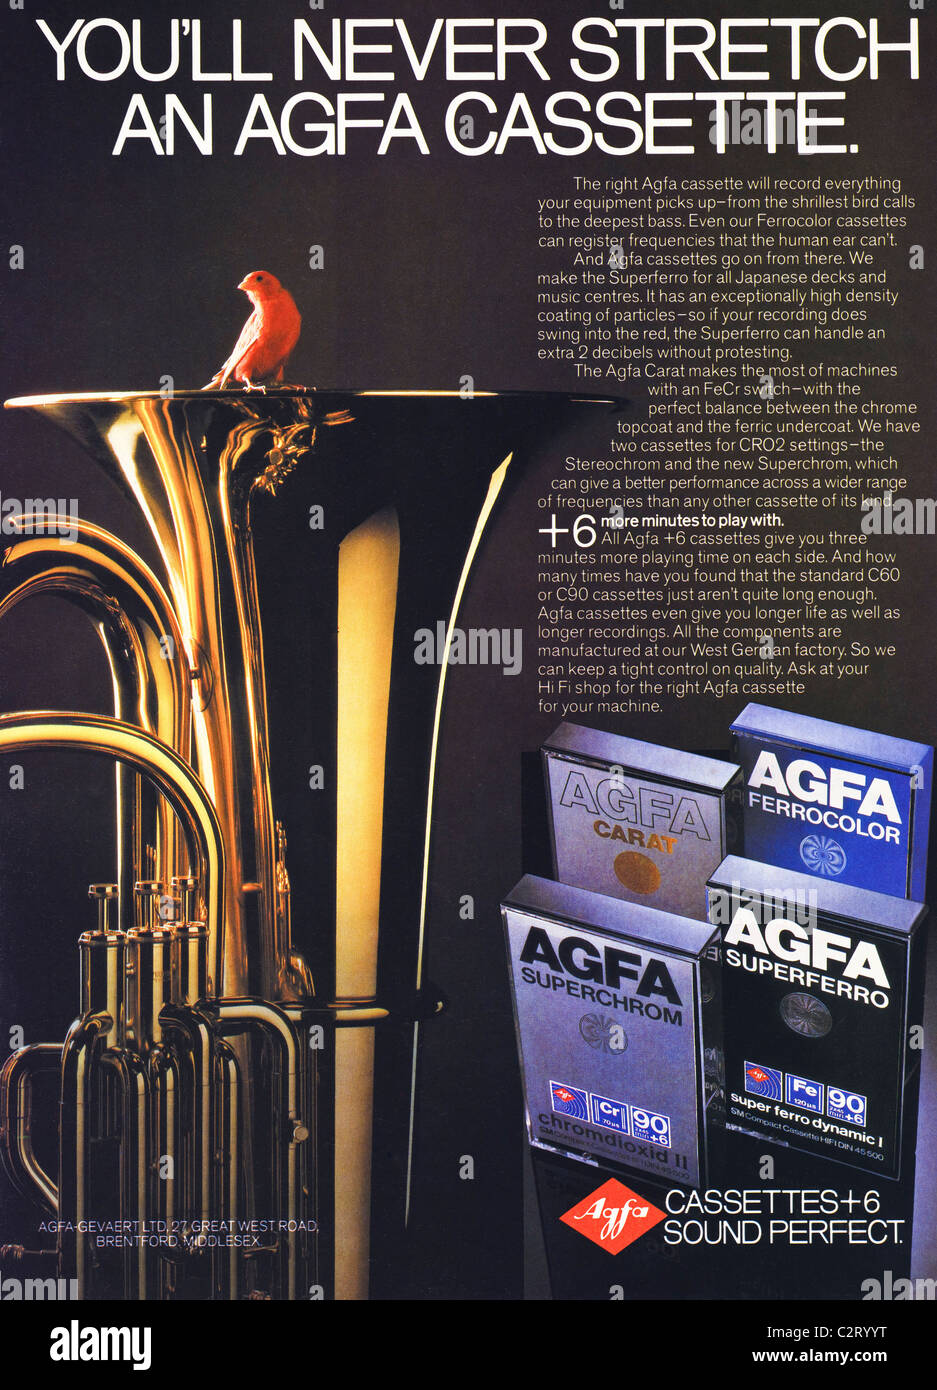 Pagina piena pubblicità per AGFA cassette in uomini della rivista circa ottanta Foto Stock